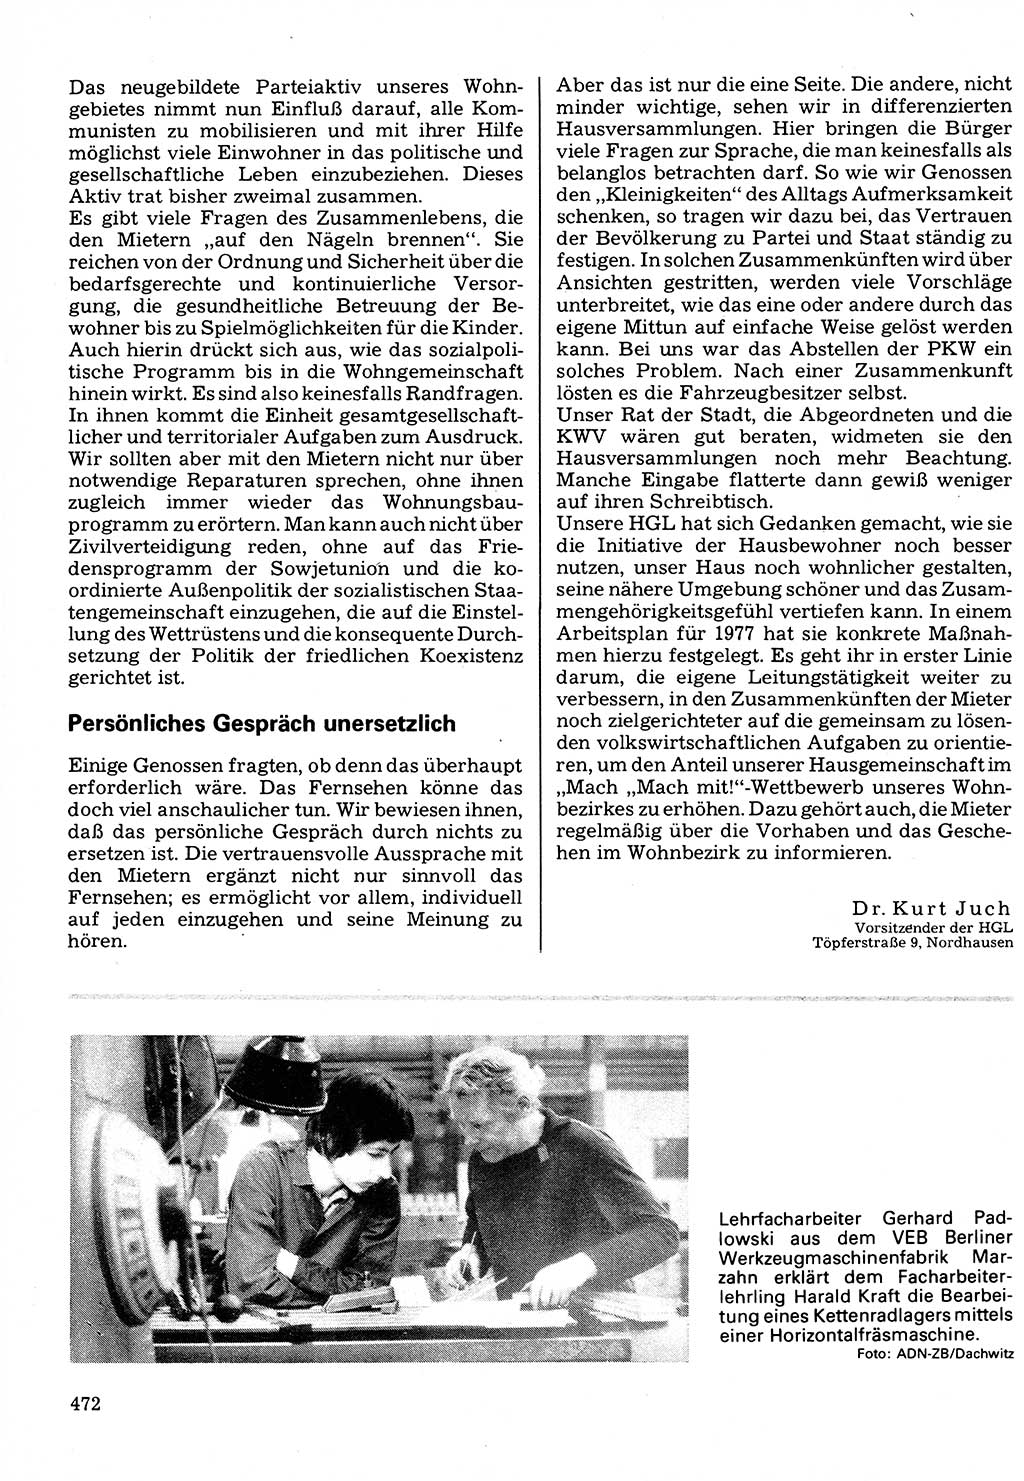 Neuer Weg (NW), Organ des Zentralkomitees (ZK) der SED (Sozialistische Einheitspartei Deutschlands) für Fragen des Parteilebens, 32. Jahrgang [Deutsche Demokratische Republik (DDR)] 1977, Seite 472 (NW ZK SED DDR 1977, S. 472)